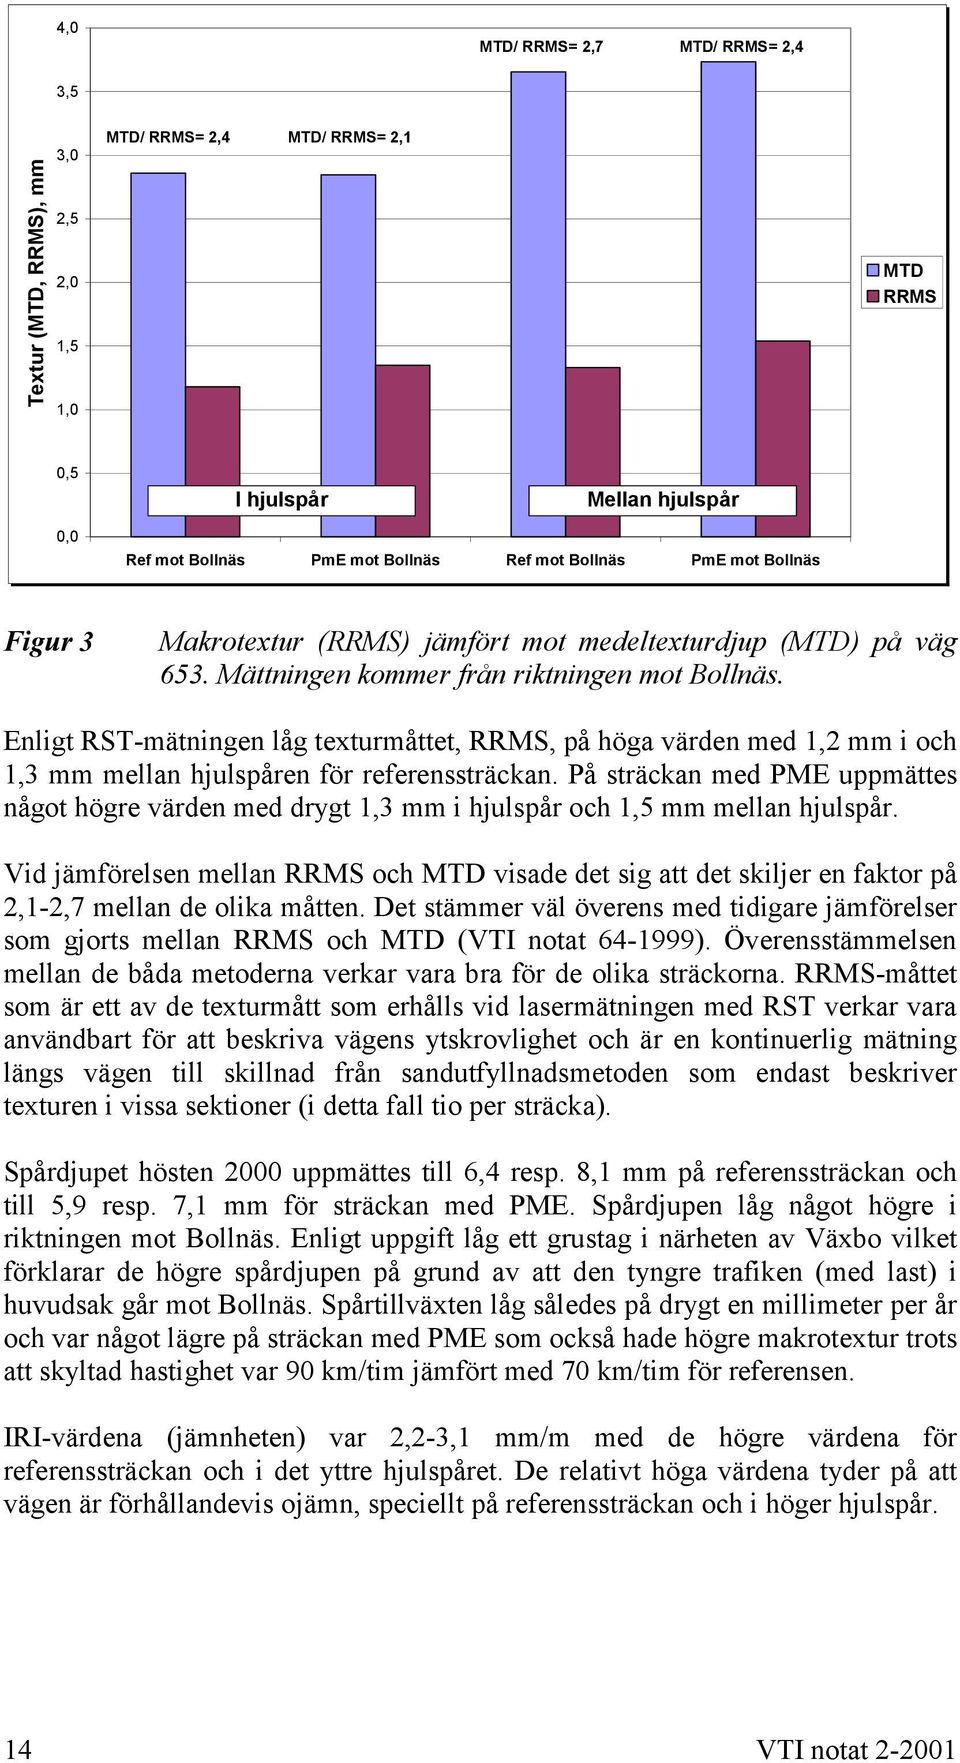 Enligt RST-mätningen låg texturmåttet, RRMS, på höga värden med 1,2 mm i och 1,3 mm mellan hjulspåren för referenssträckan.